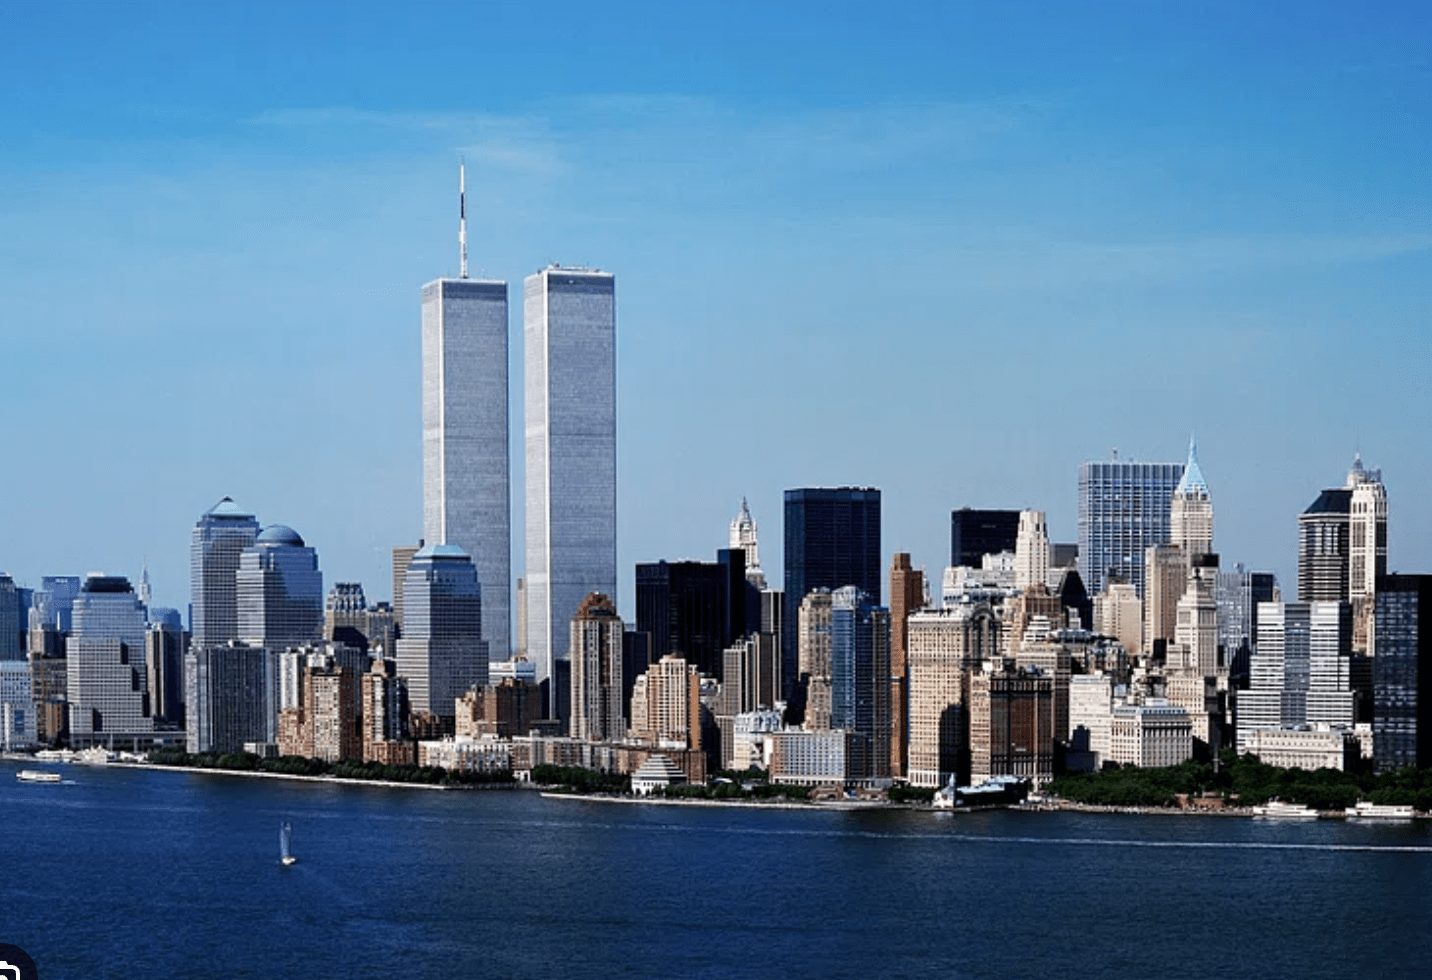 Manhattan skyline before 9/11